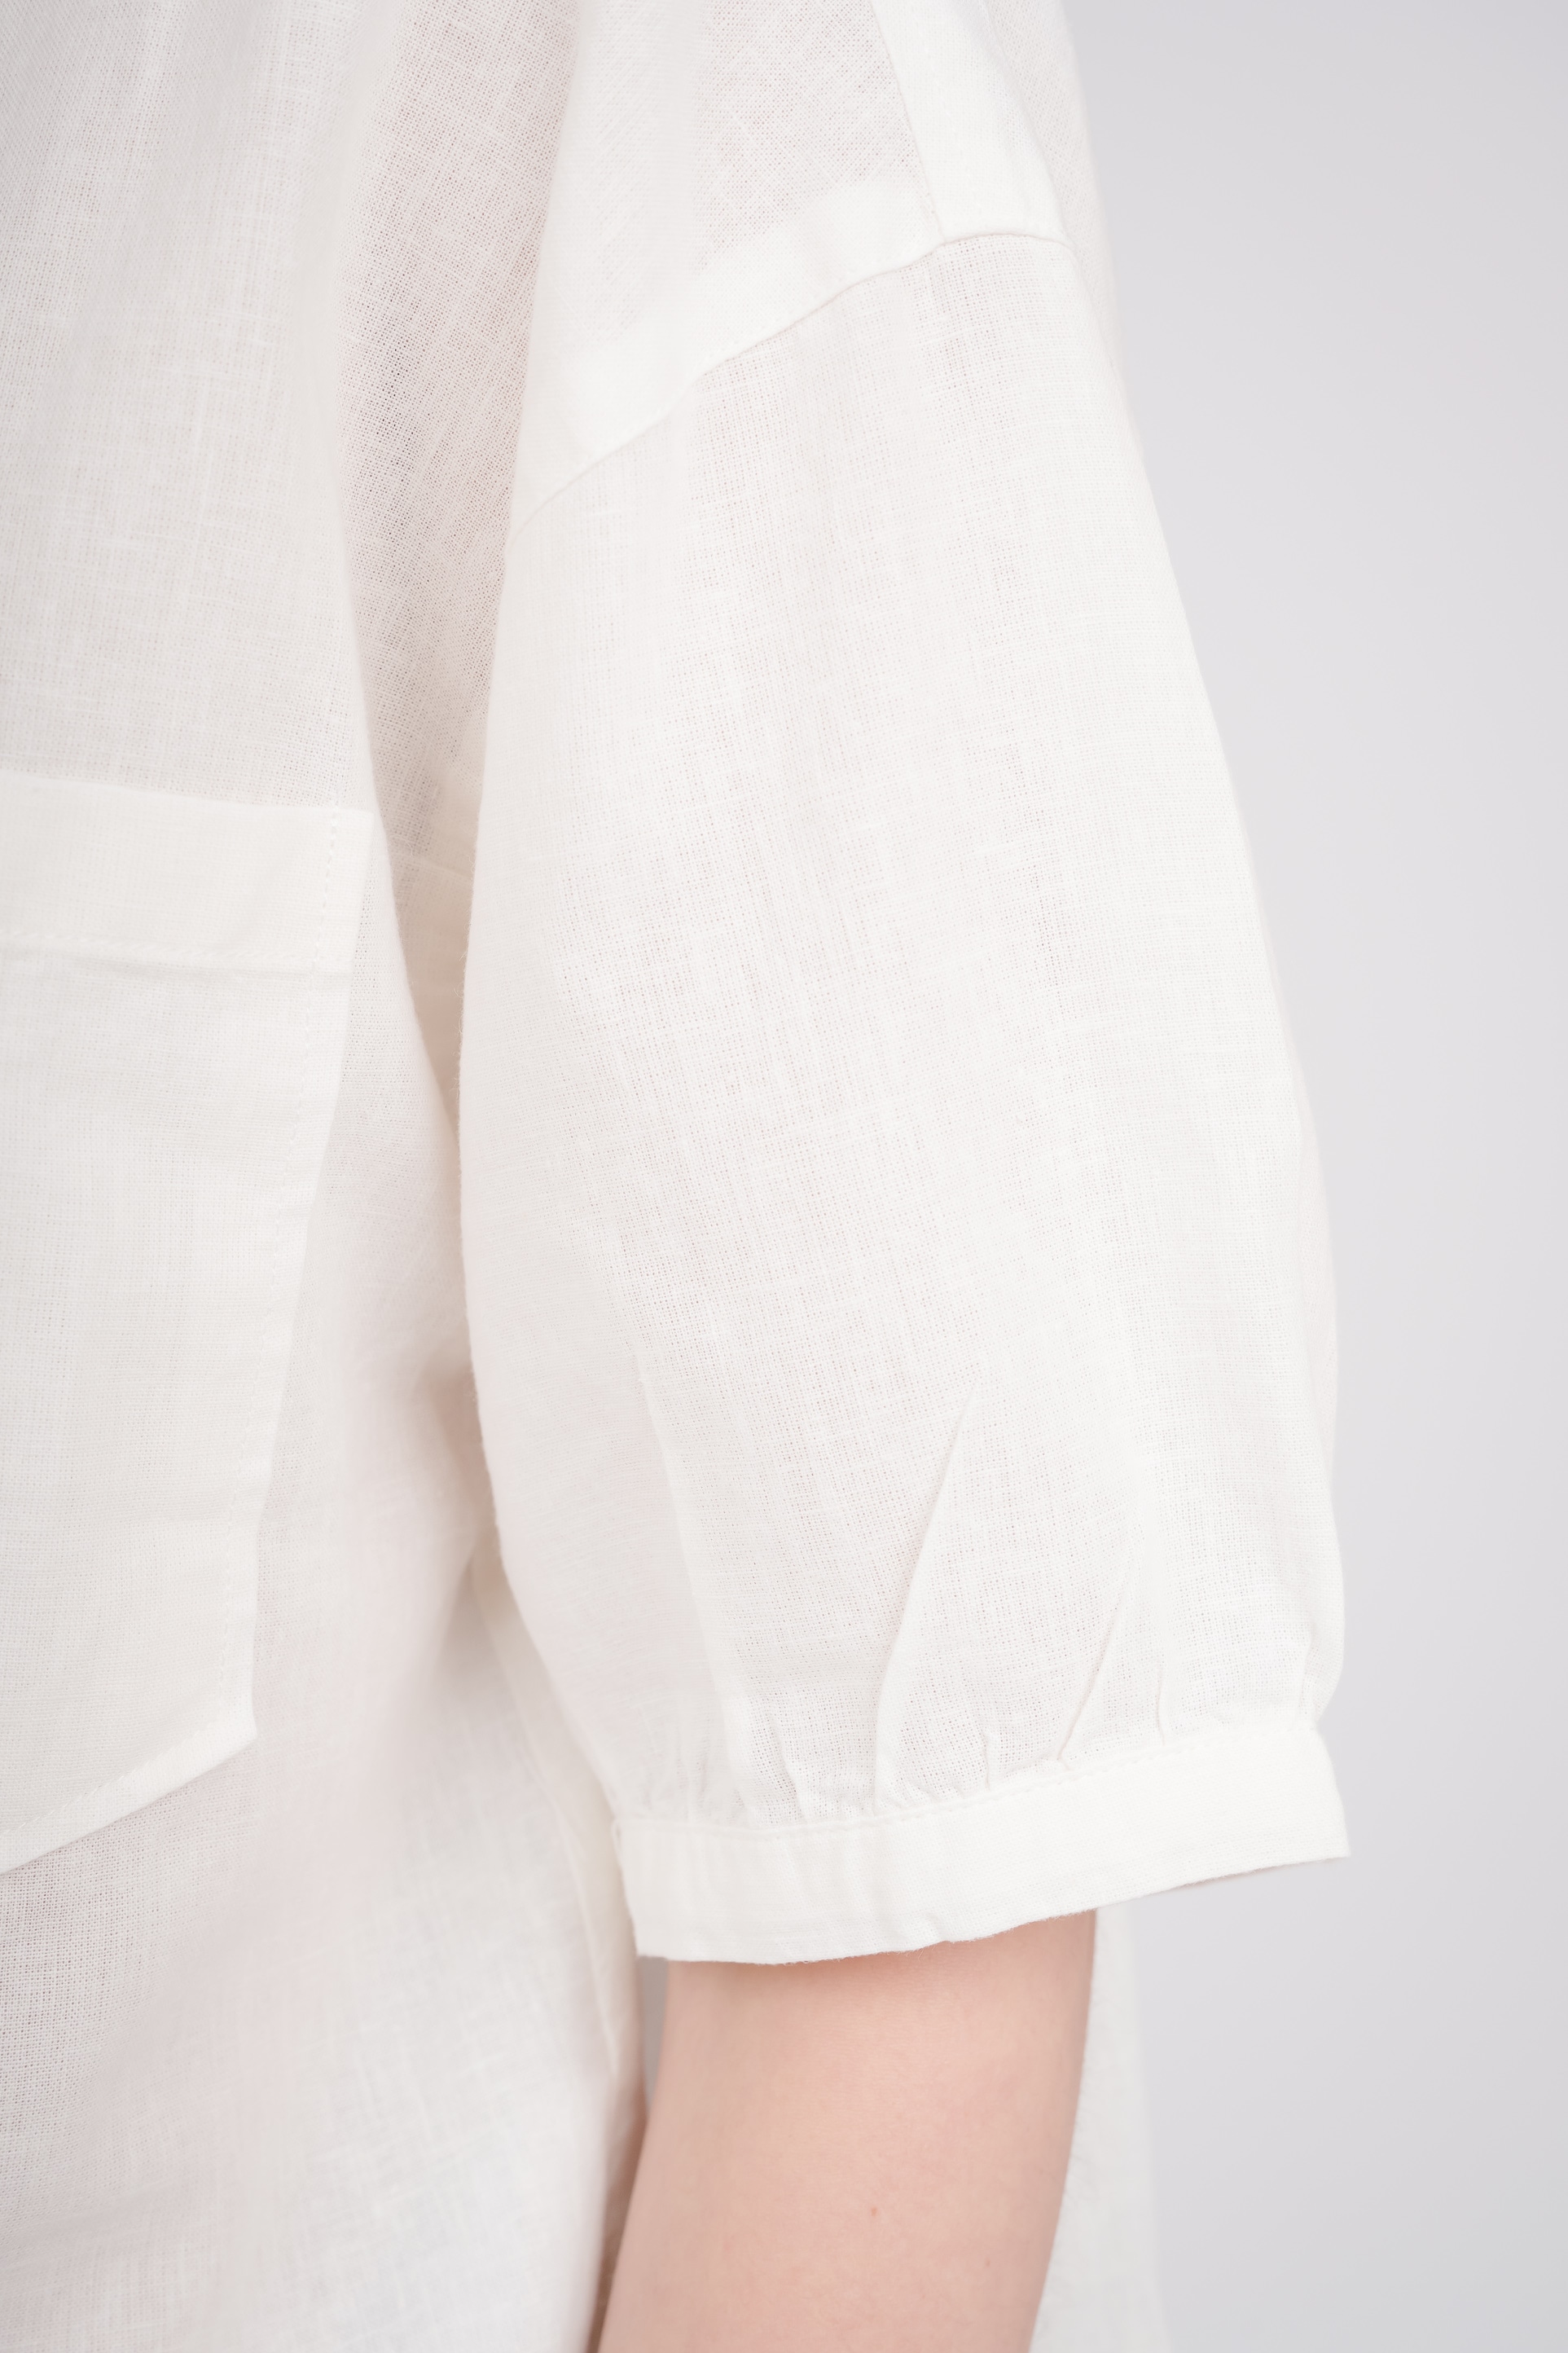 GIORDANO Klassische Bluse, mit schicken Puffärmeln online kaufen | I\'m  walking